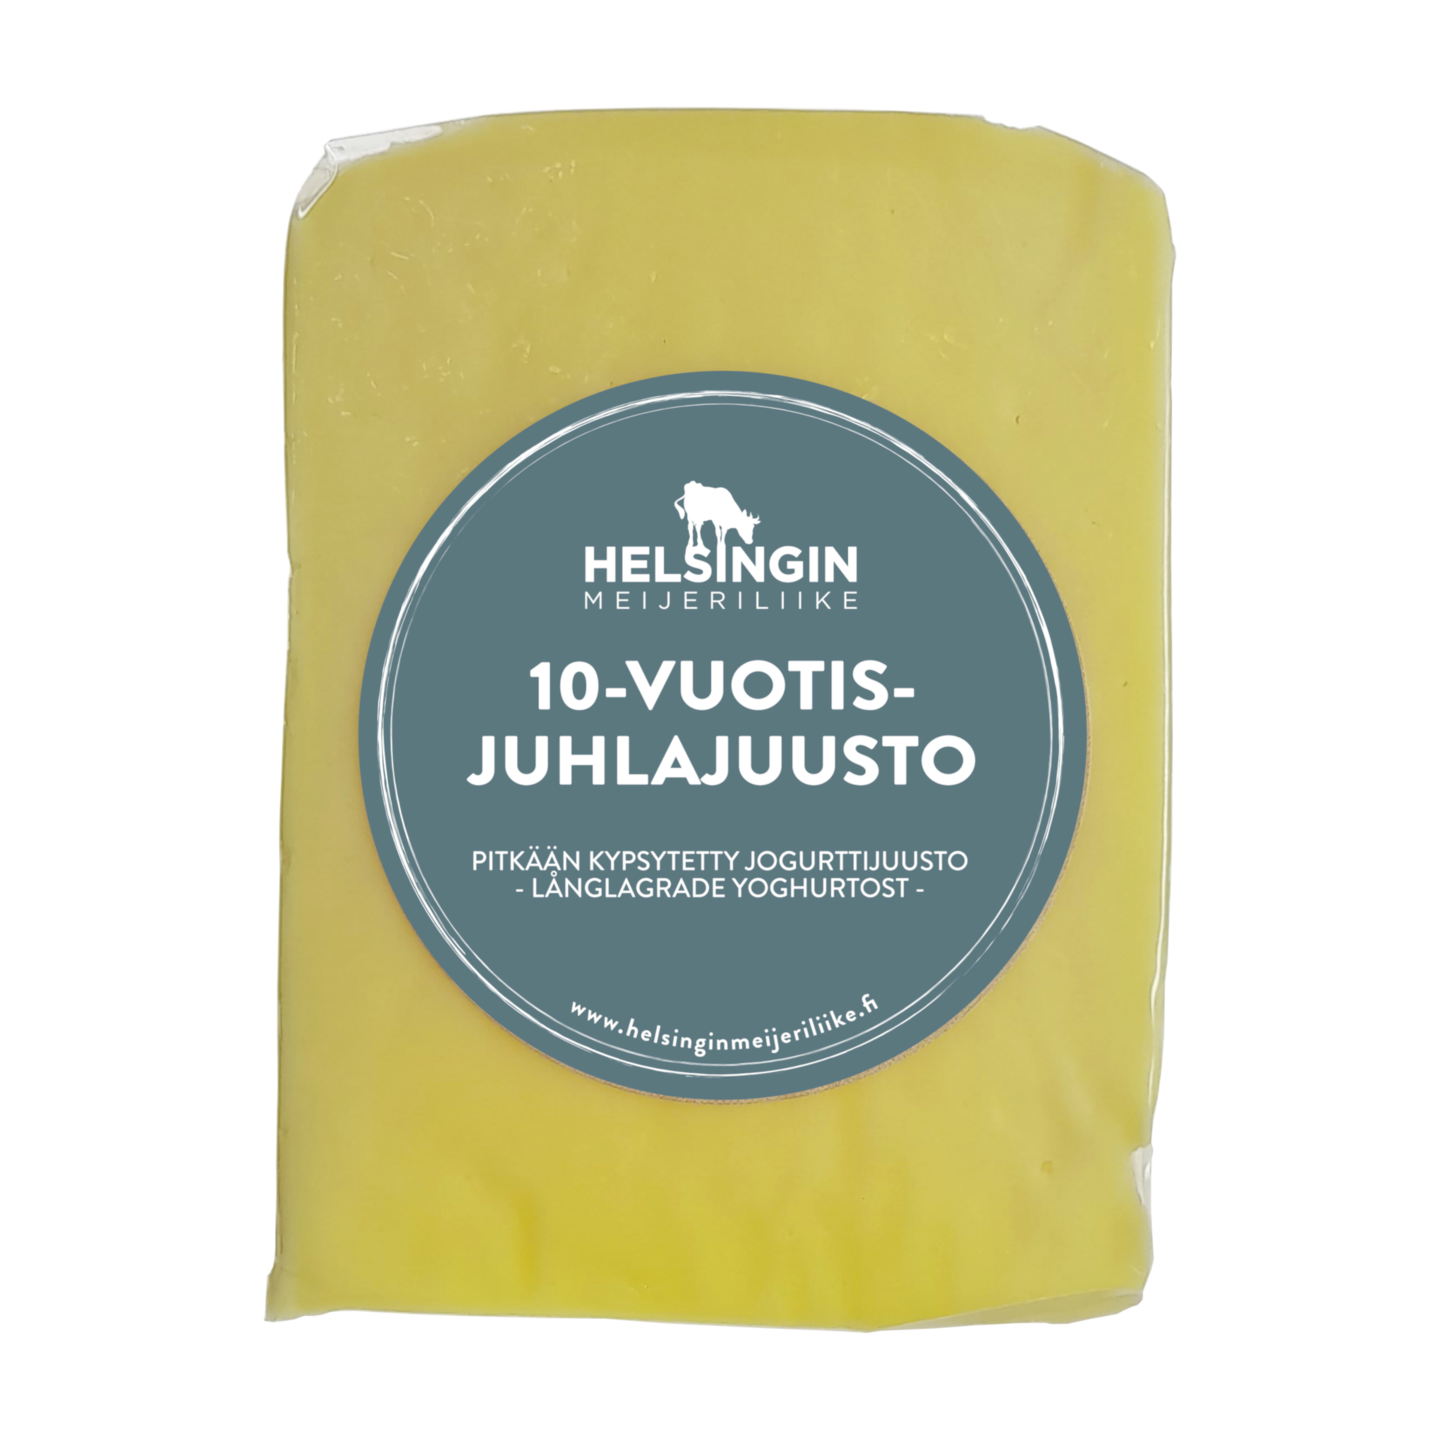 Helsingin Meijeriliike 10 vuotis juhlajuusto kypsytetty juusto 150g